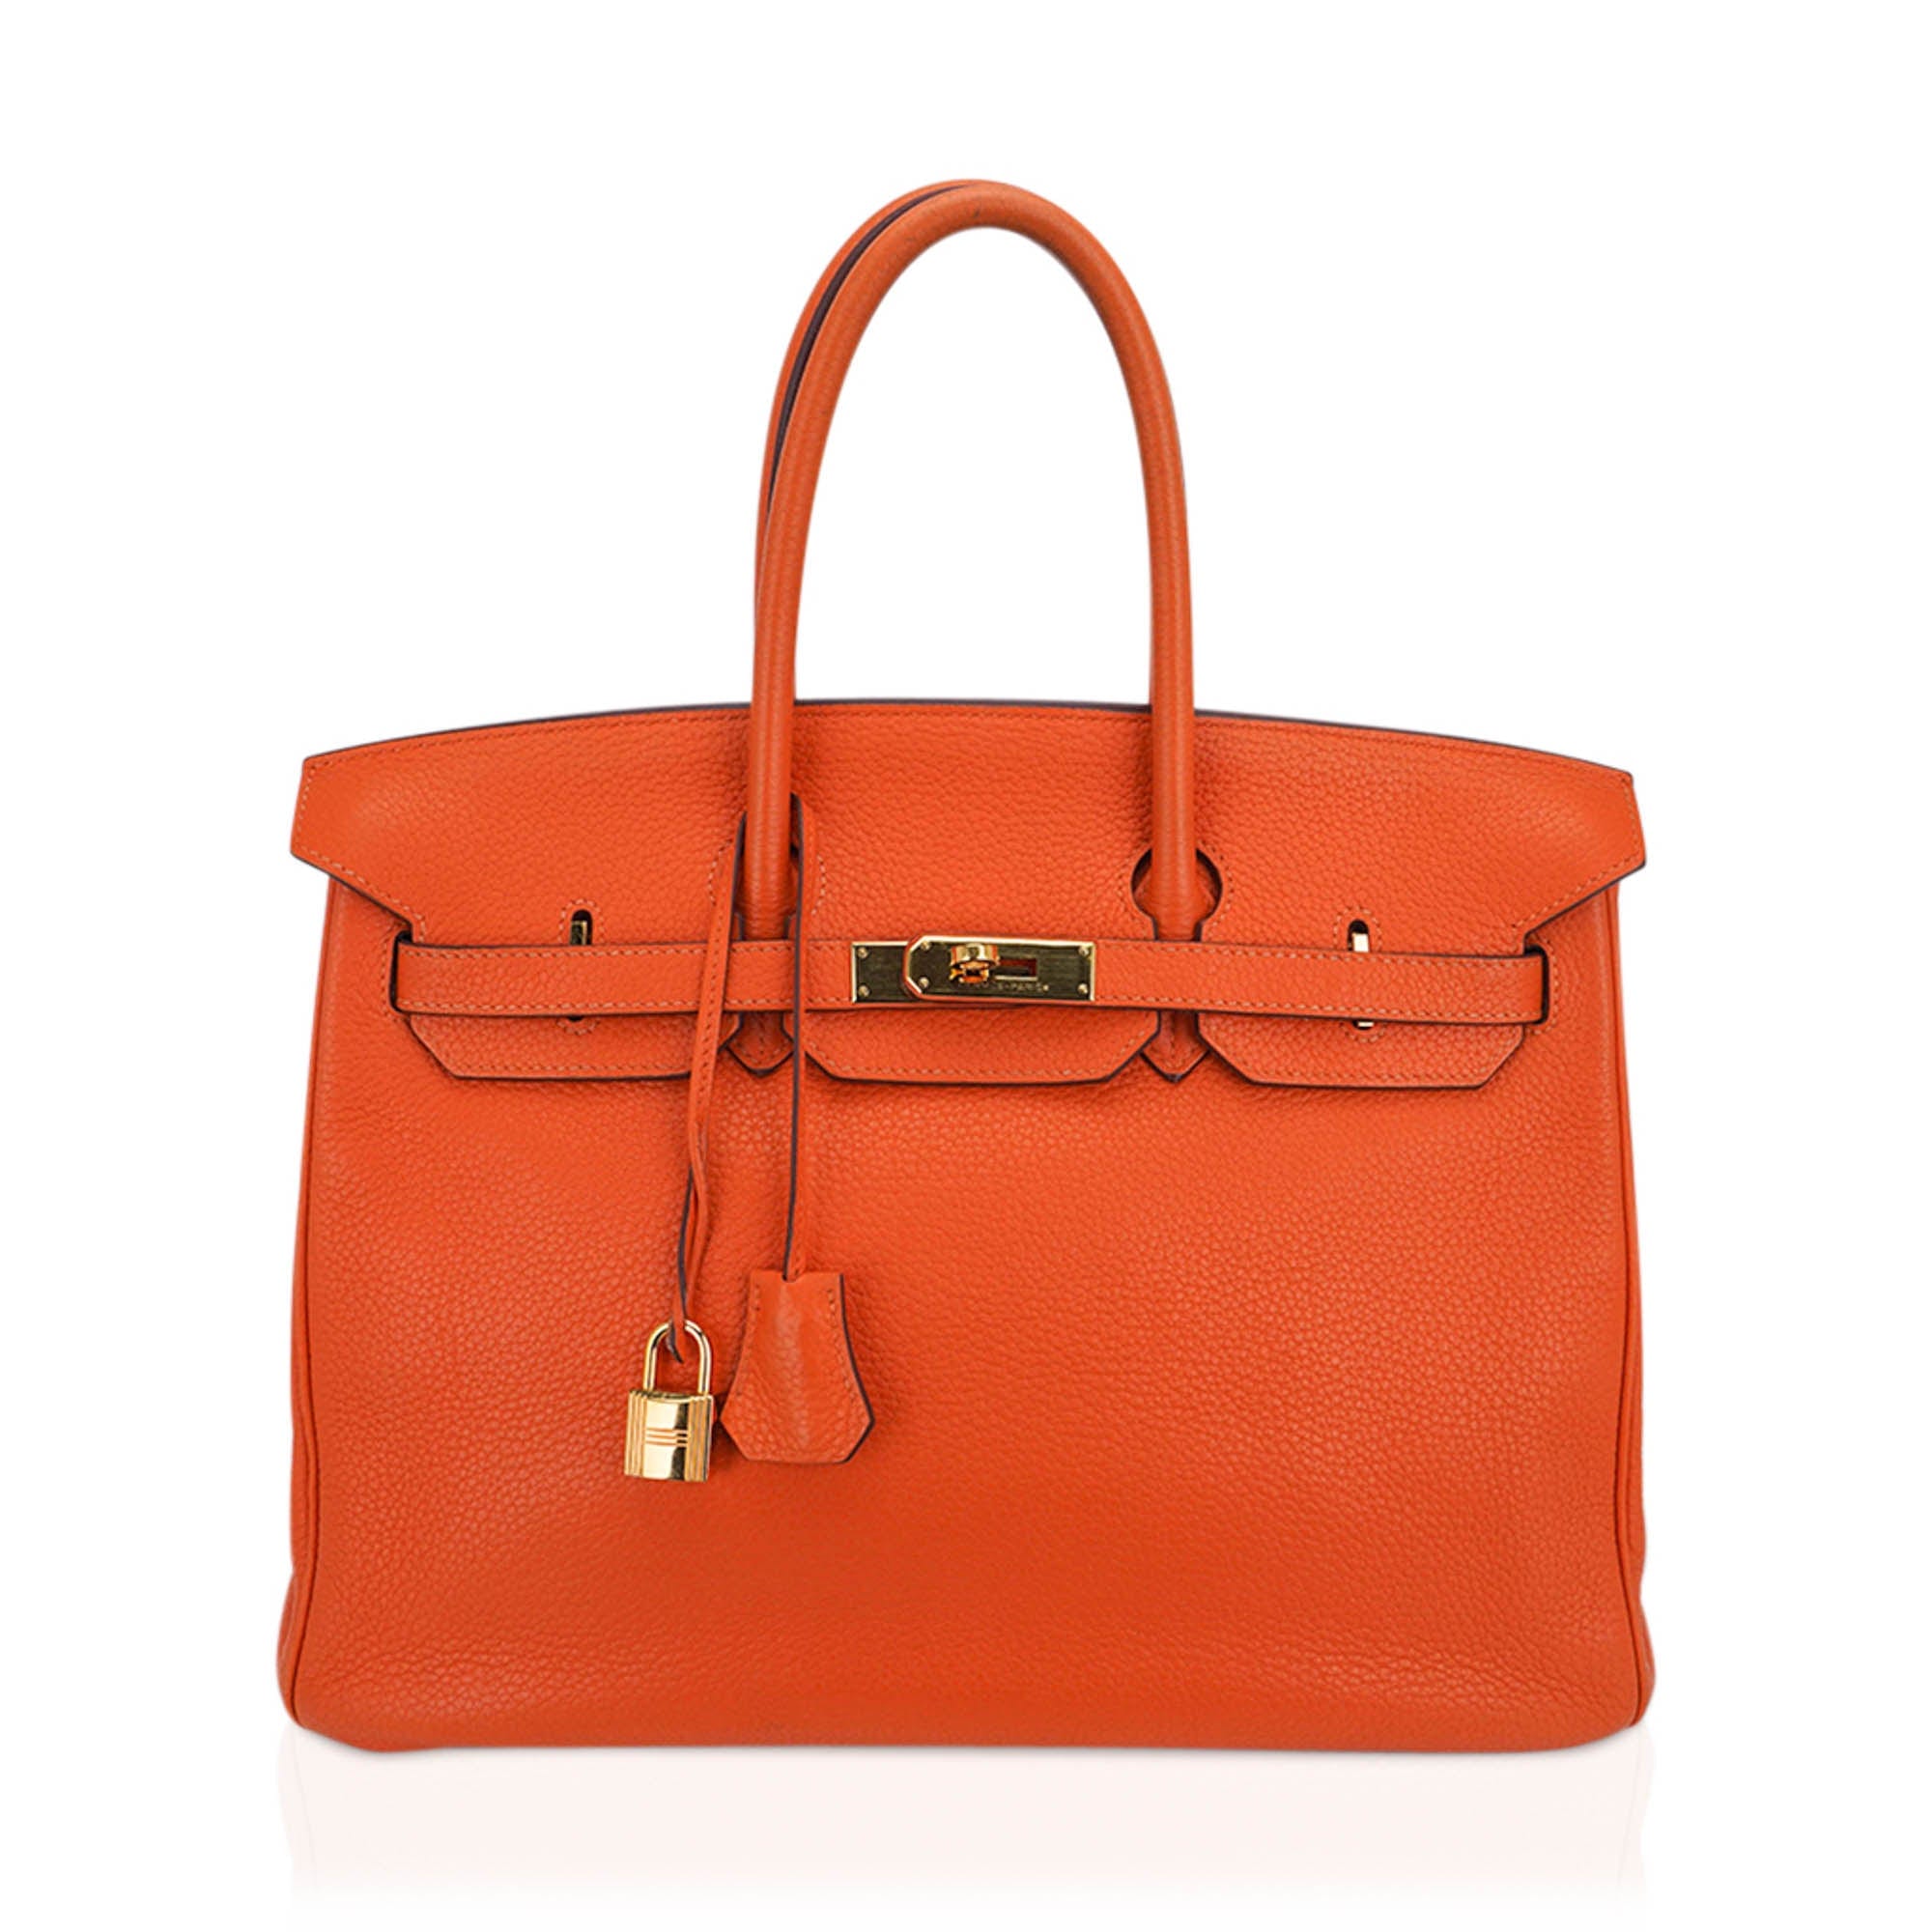 Hermes Birkin 35 Bag Orange Togo Leather with Gold Hardware